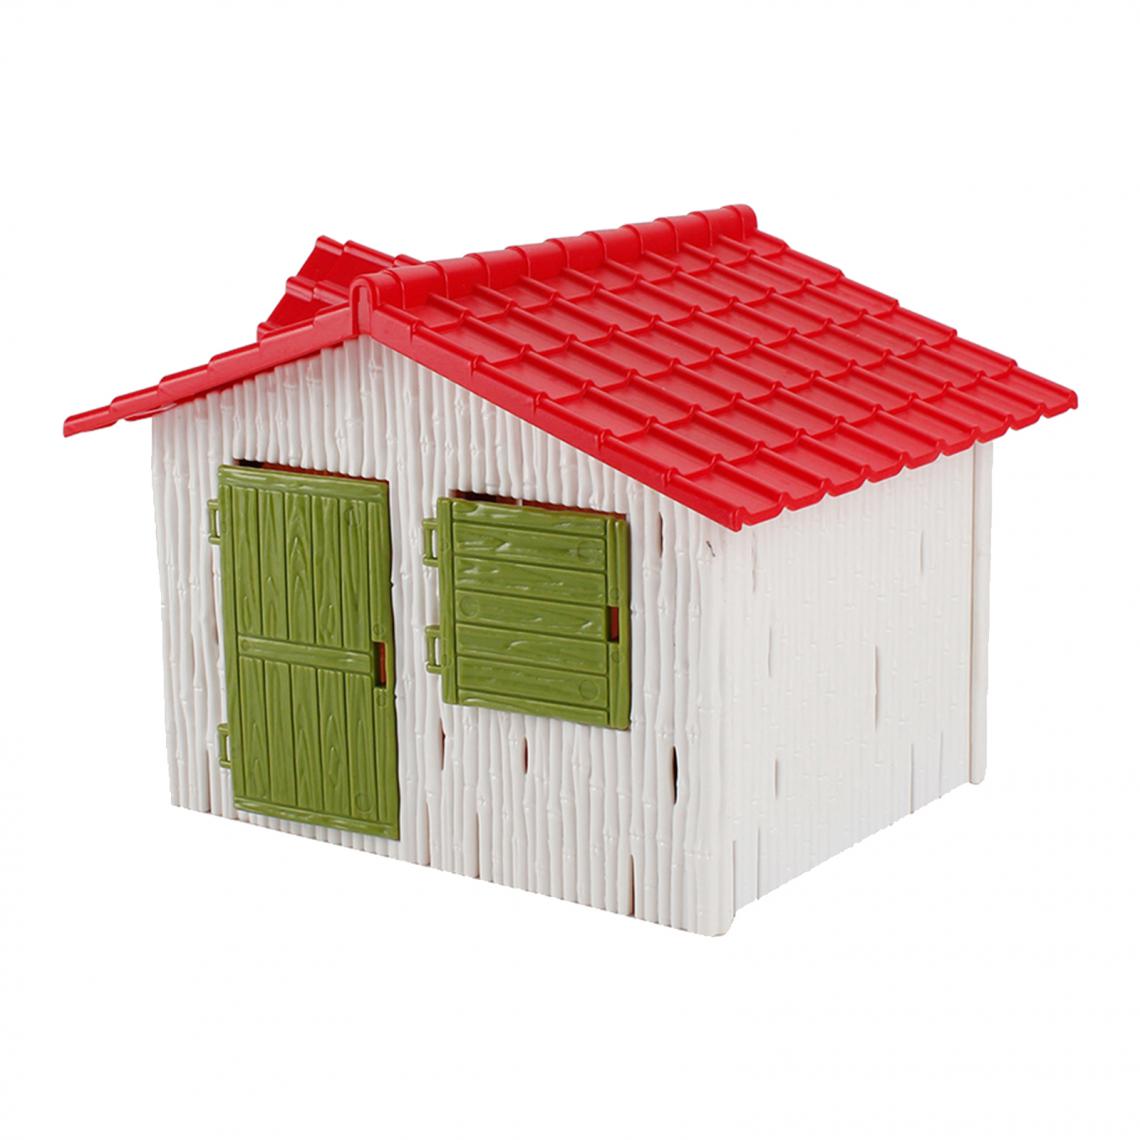 marque generique - Fairy Cottage Micro Landscape Yard Building Modèle Disposition Diorama Style A - Petite déco d'exterieur